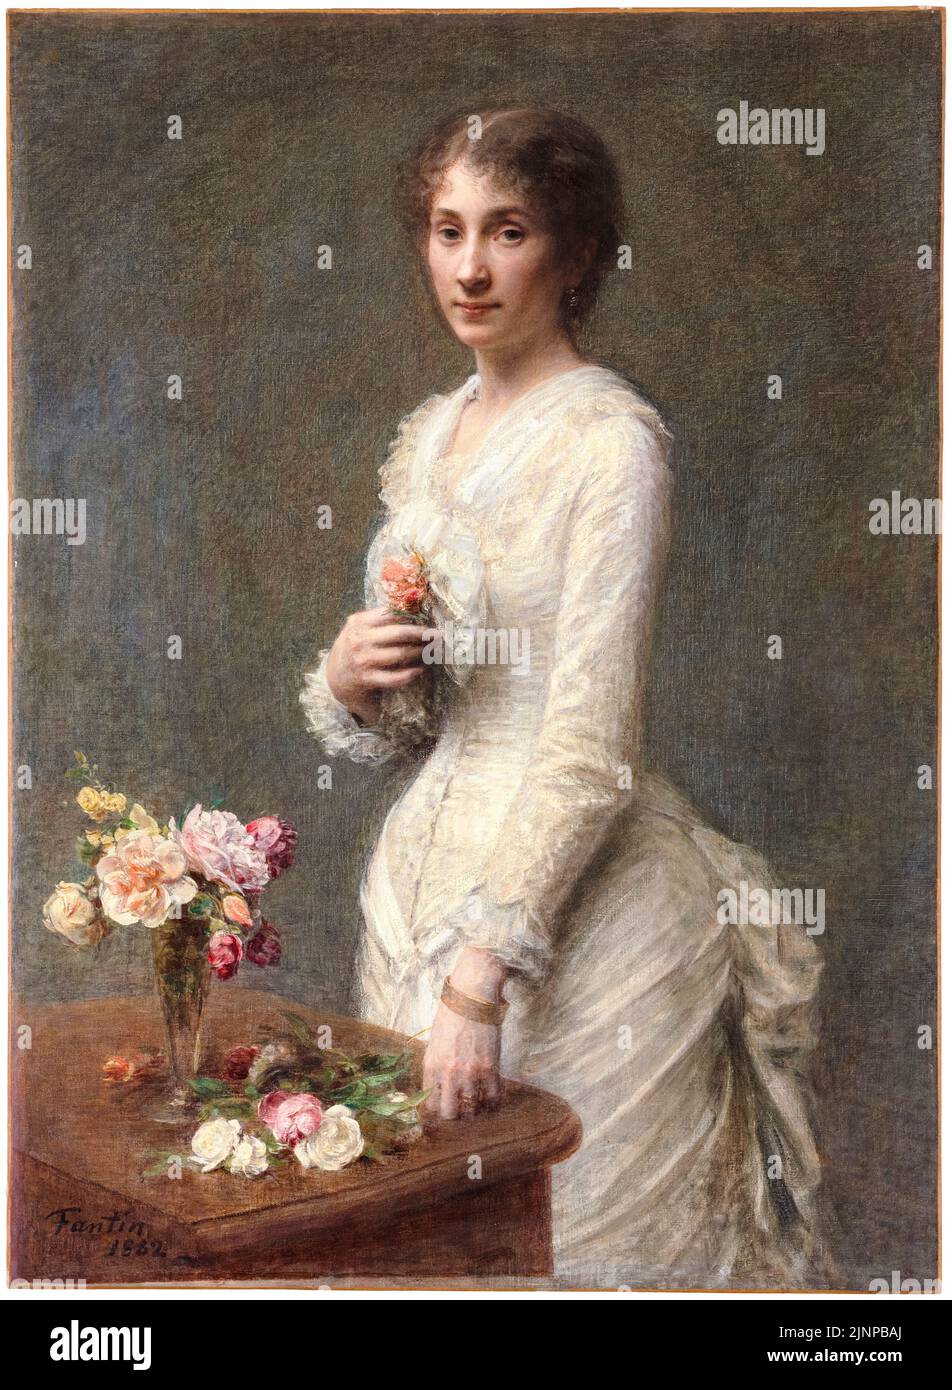 Henri Fantin Latour, Madame Lerolle, portrait peint à l'huile sur toile, 1882 Banque D'Images